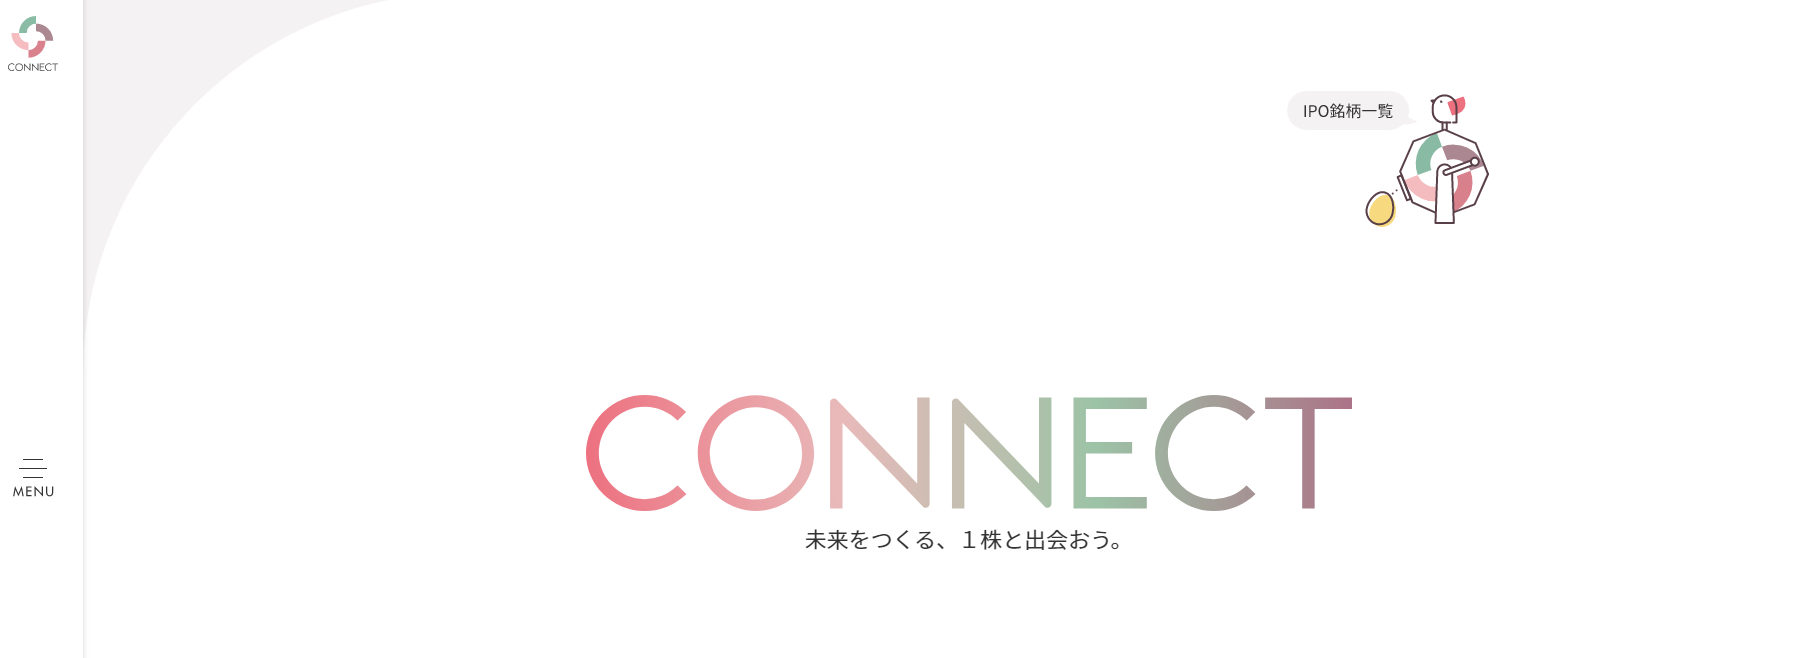 スマホ_株_CONNECT